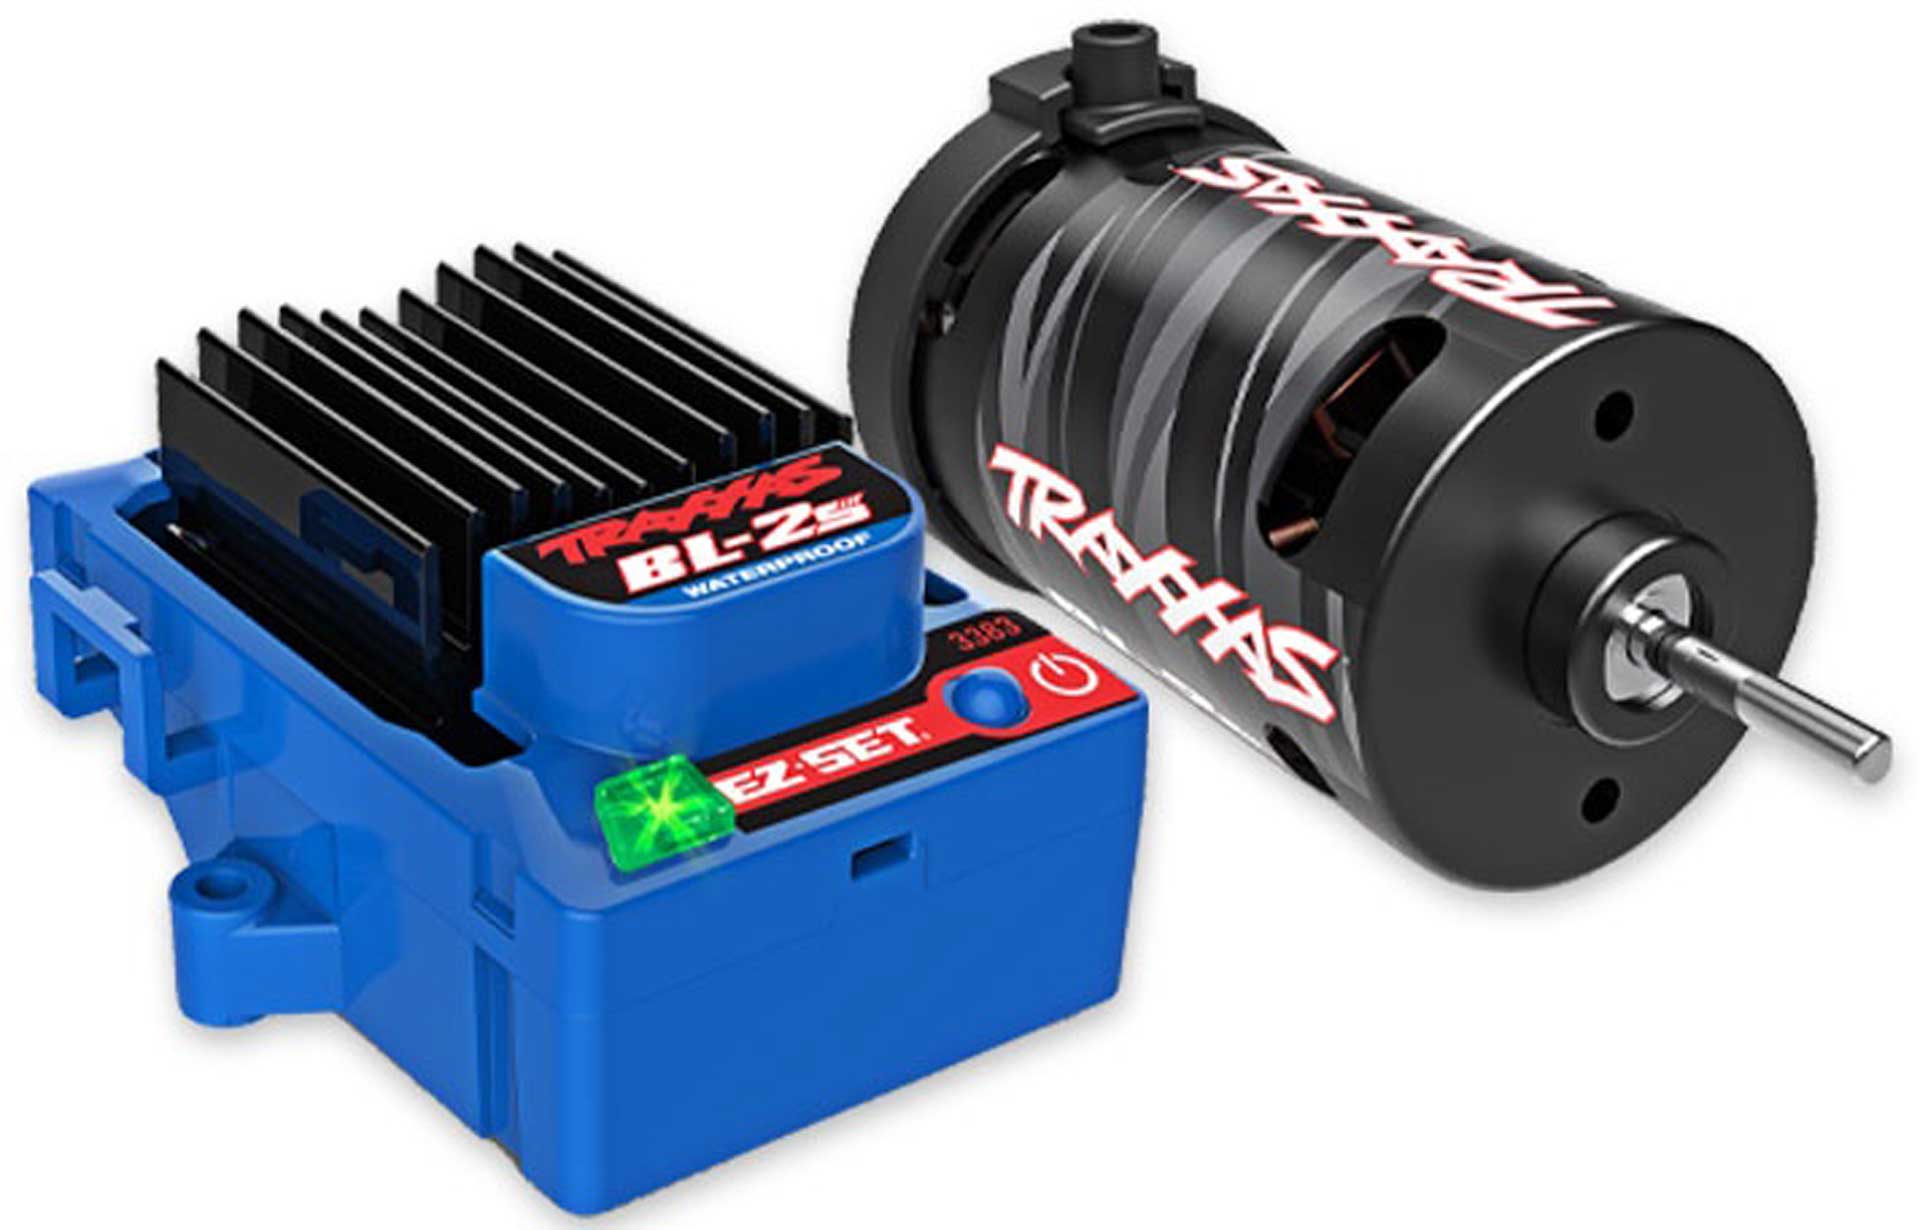 TRAXXAS BL-2S BRUSHLESS POWER SYSTEM waterproofed (ESC & motor)